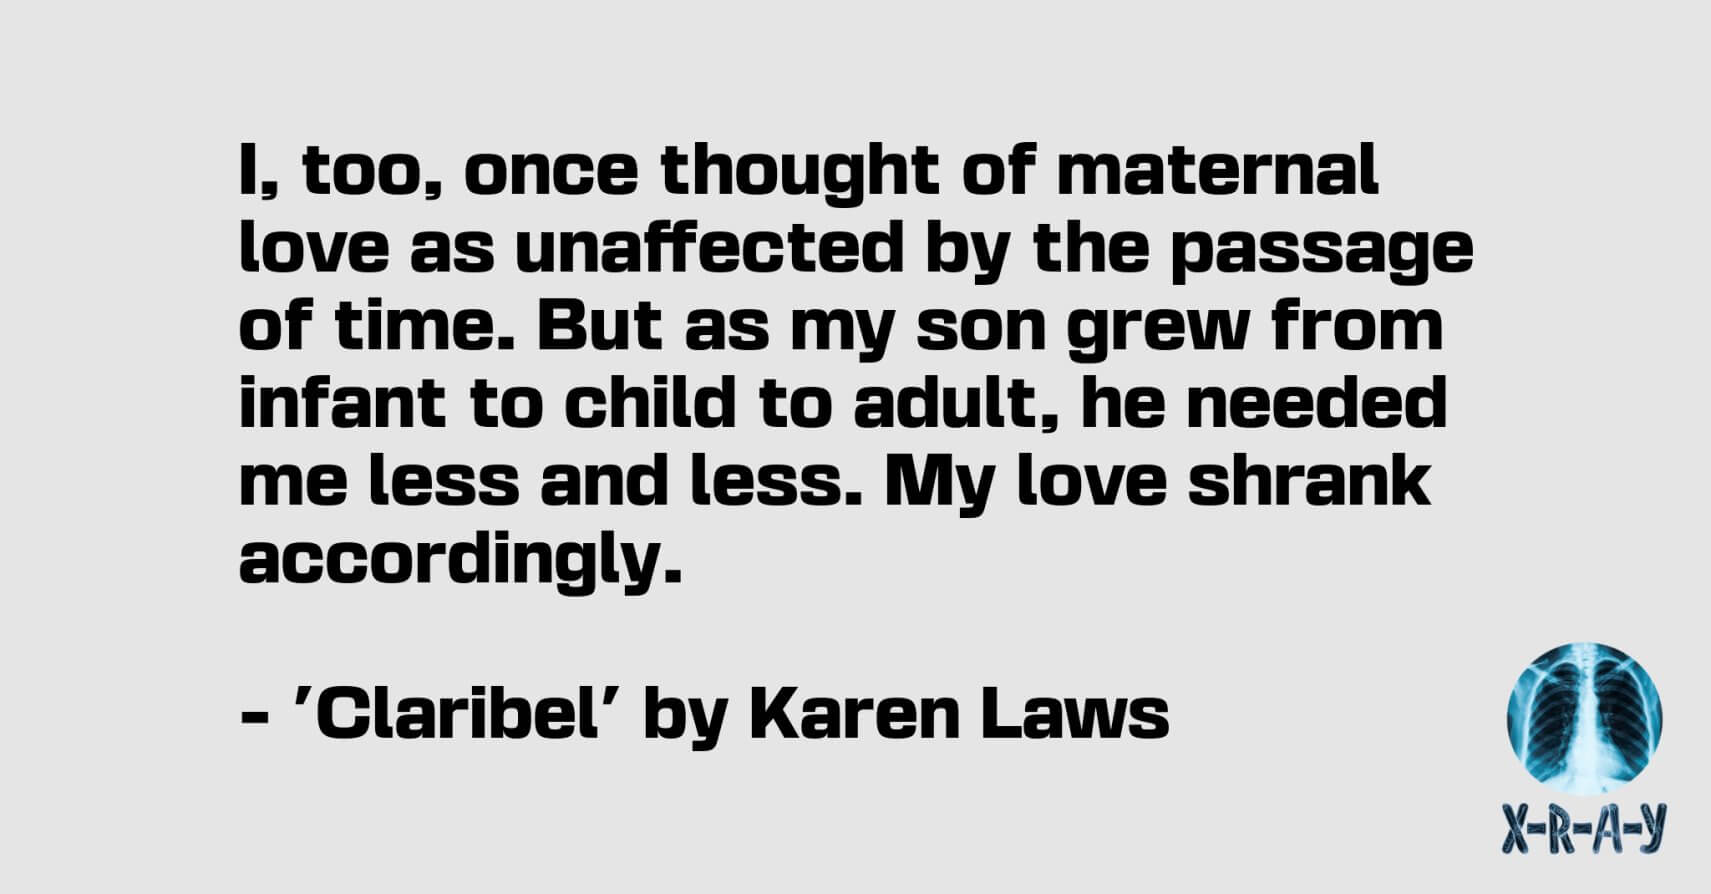 CLARIBEL by Karen Laws